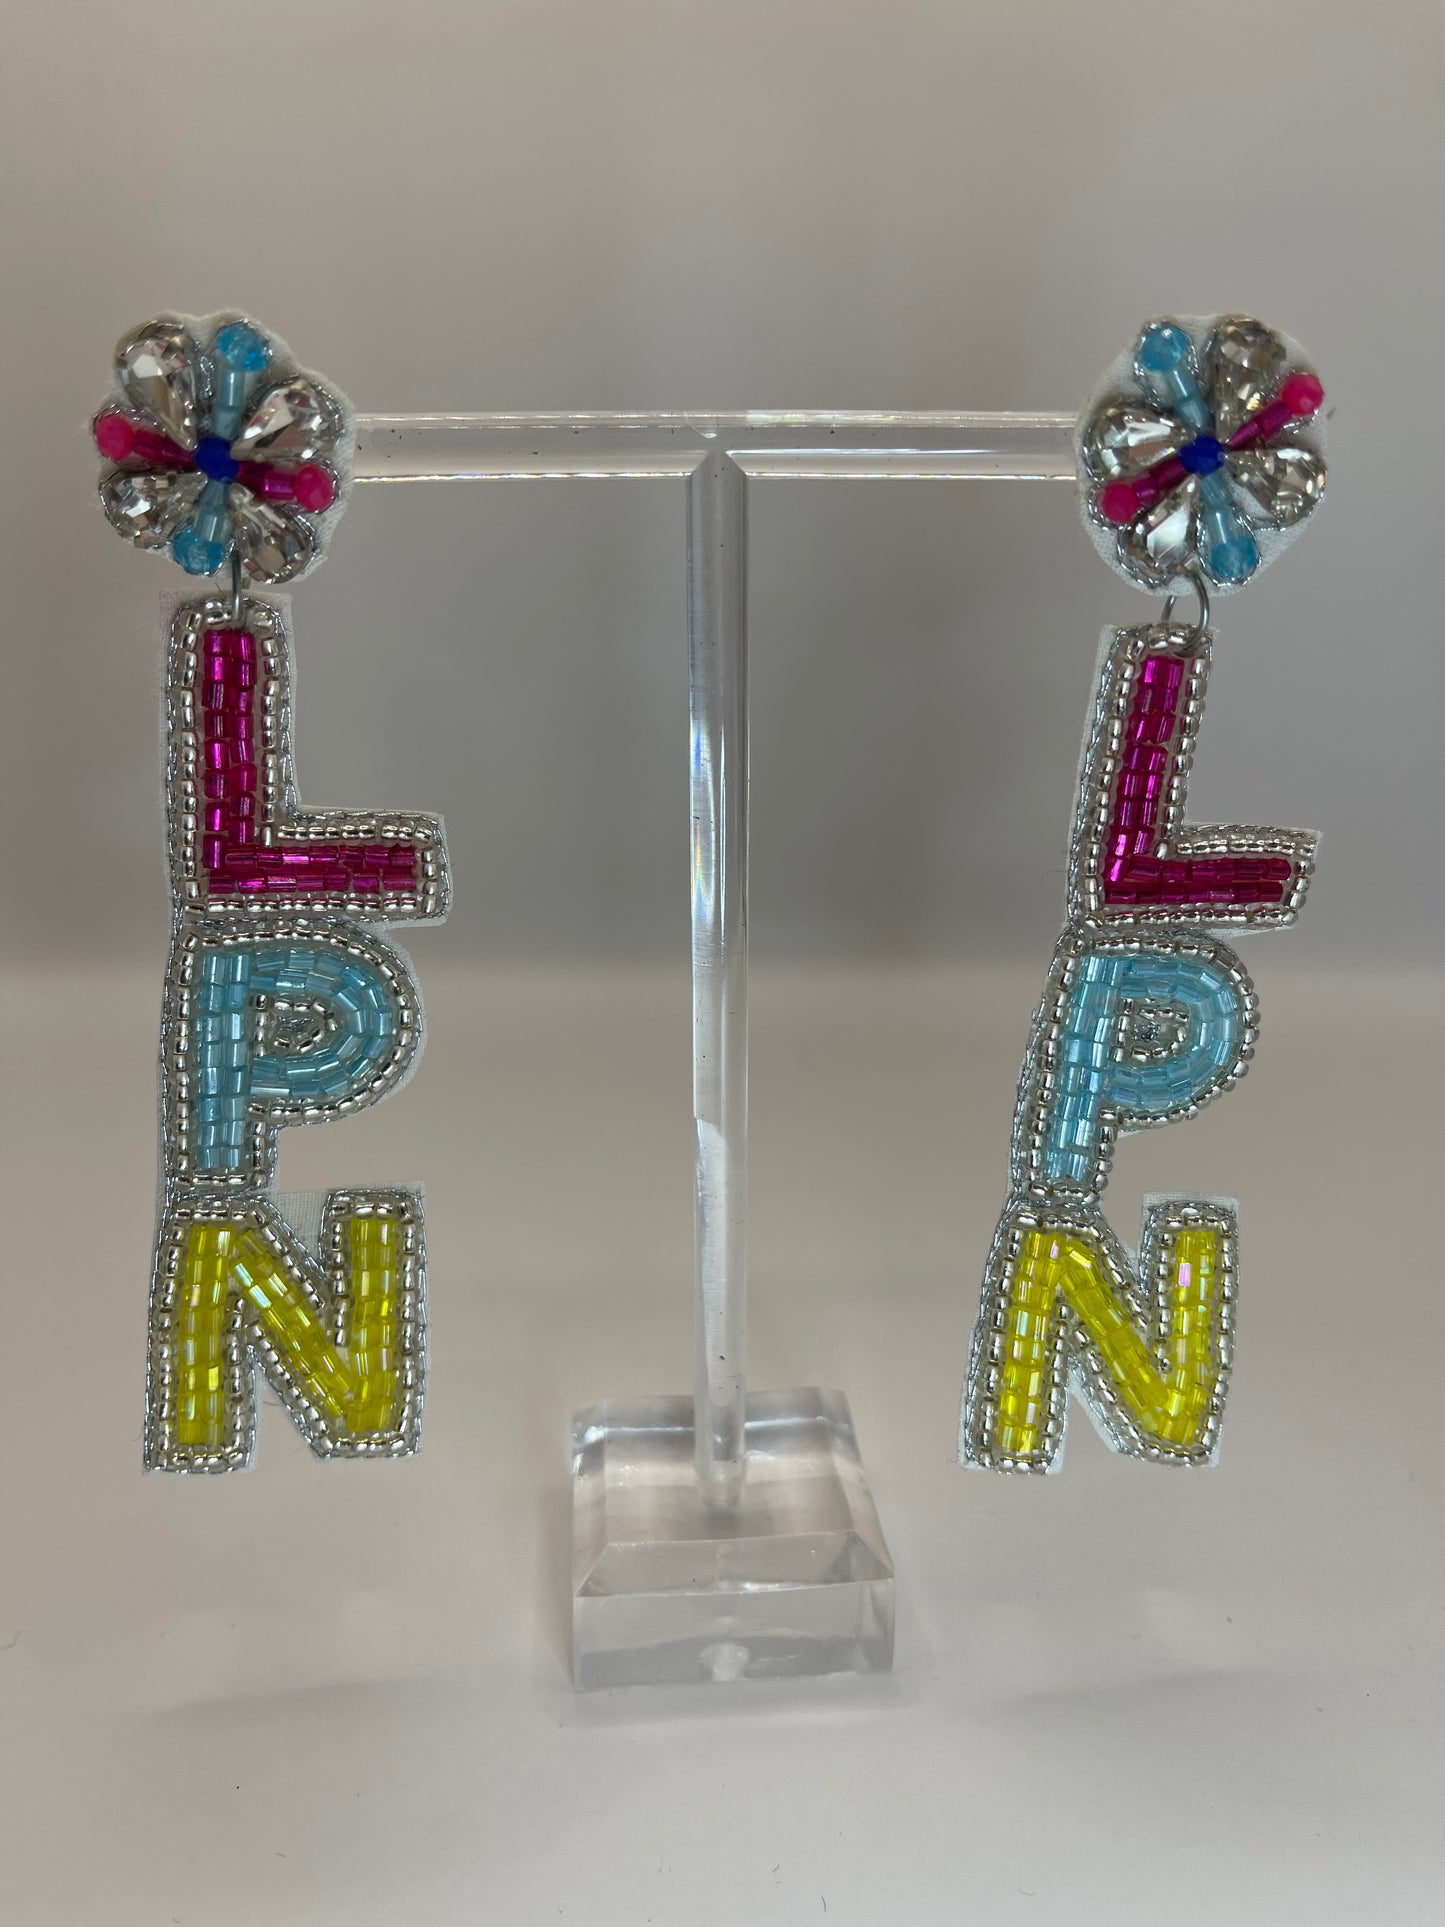 LPN Licensed Practical Nurse Beaded Earrings